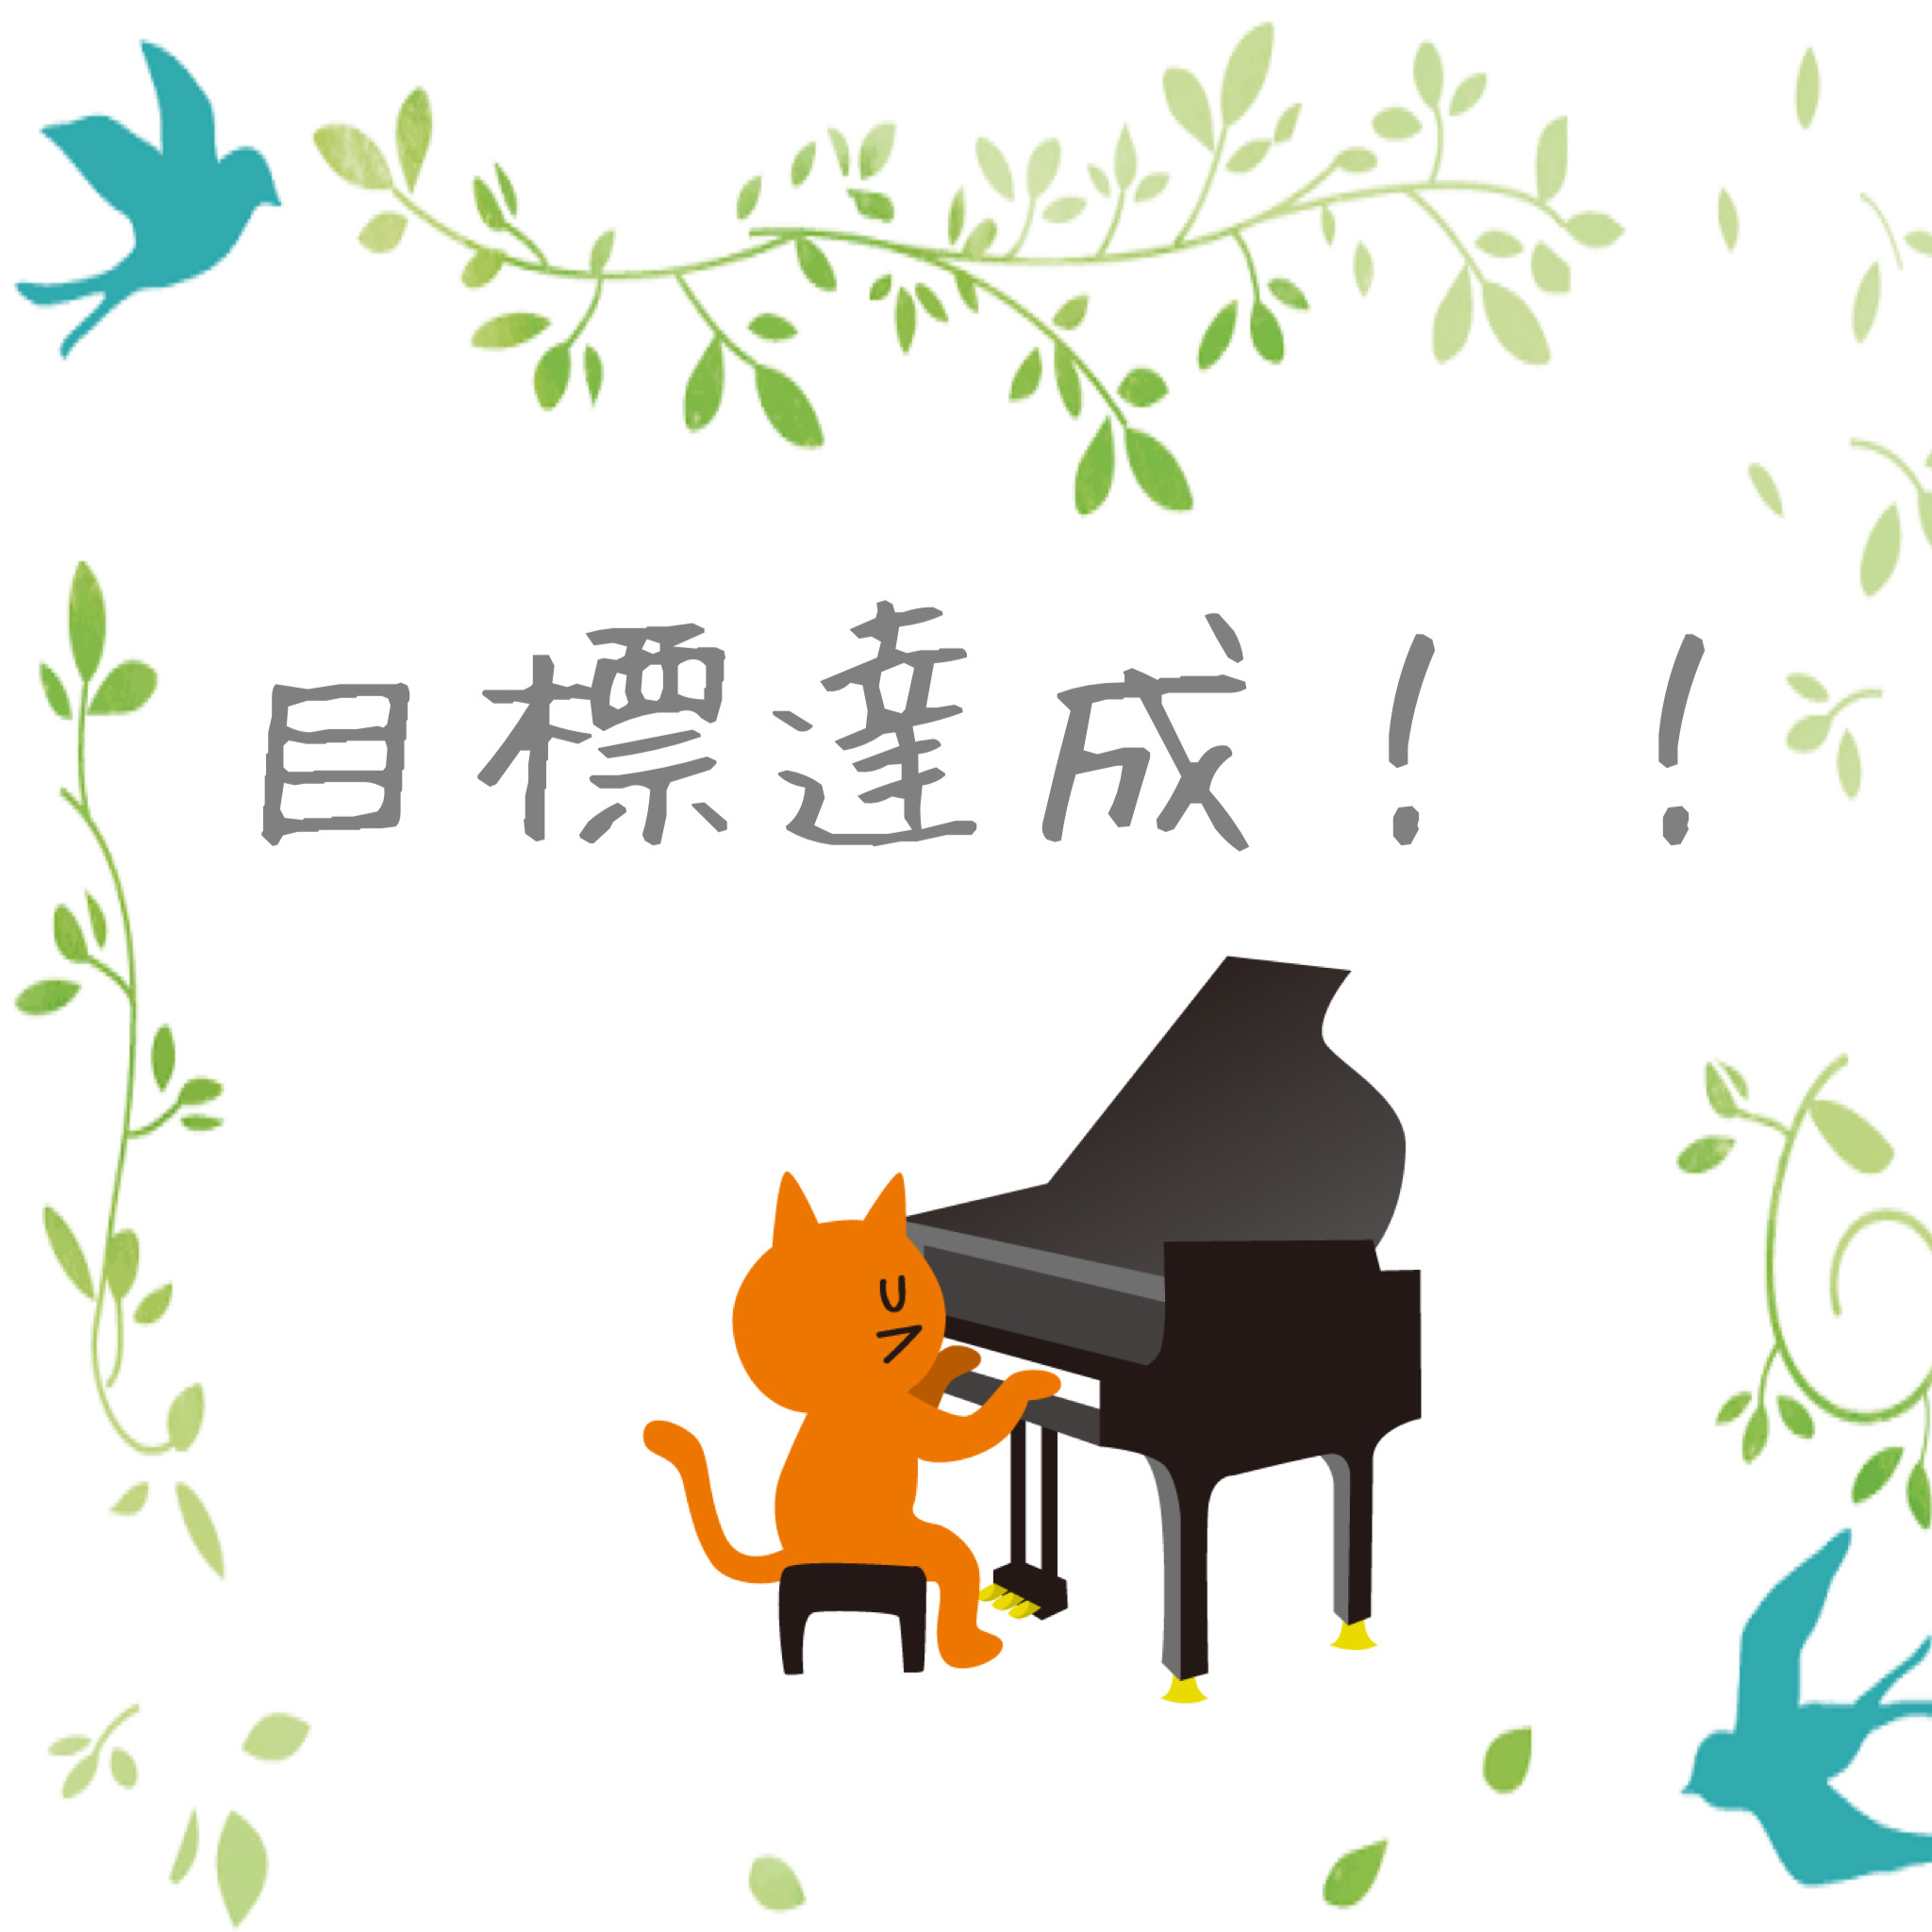 image32.JPG alt="Misuzu Music Houseの生徒さんが自身で立てた目標を達成しました！"